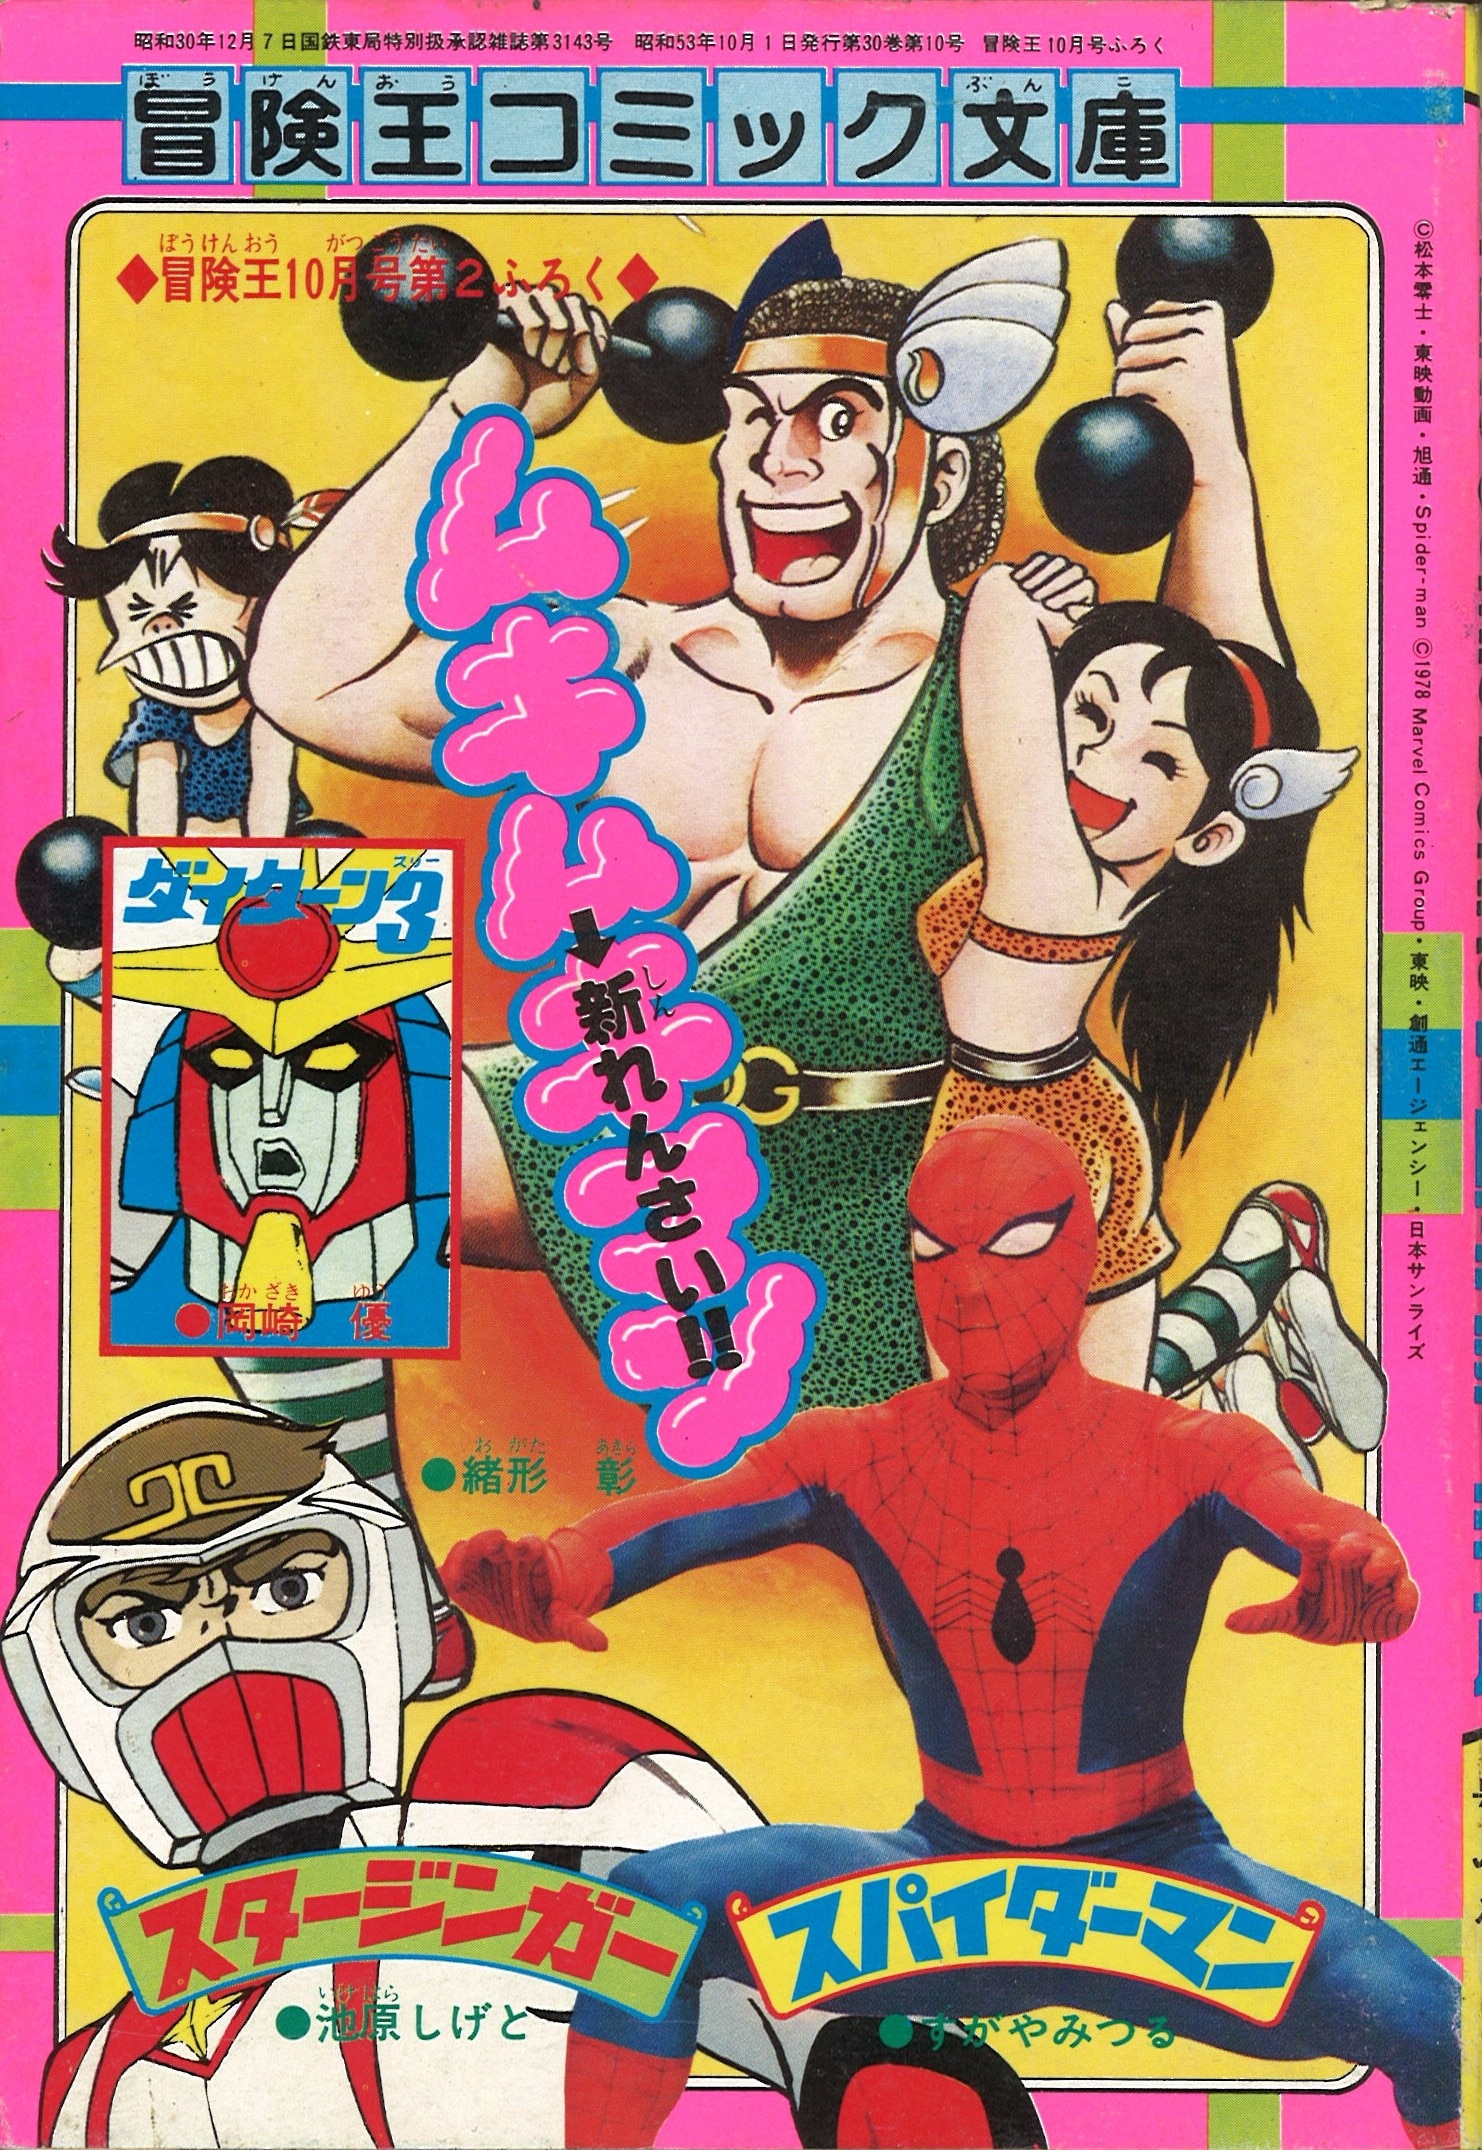 1978年(昭和53年)10月号第2付録 冒険王コミック文庫 ムキムキマン/緒方 